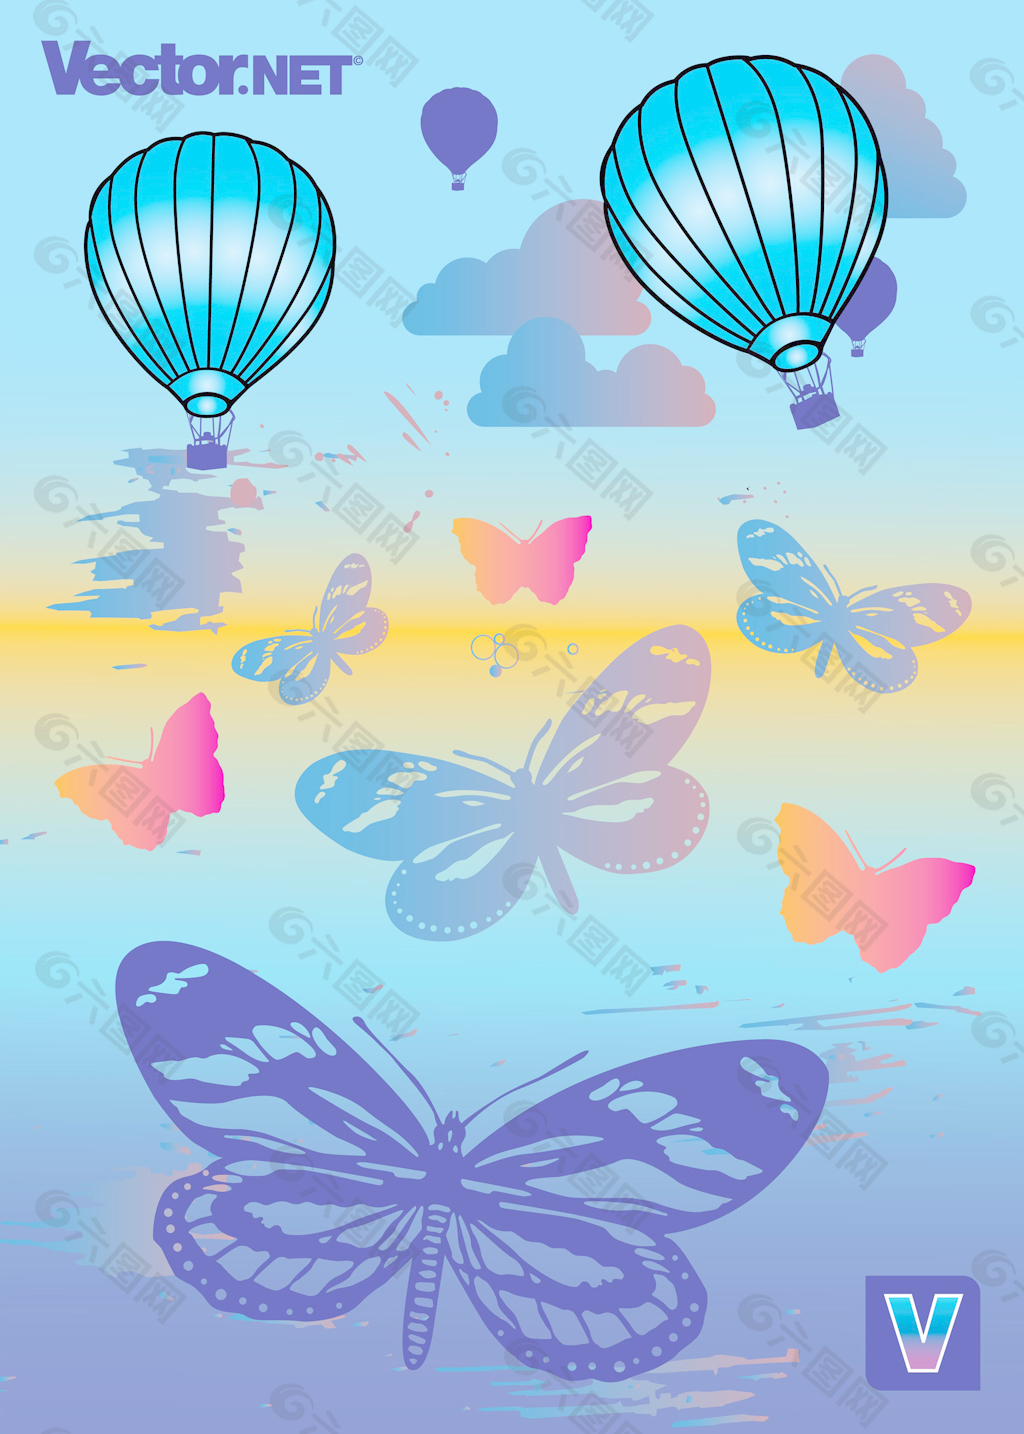 天使翅膀铝膜气球 儿童充气玩具蝴蝶翅膀气球 生日派对装饰用品-阿里巴巴